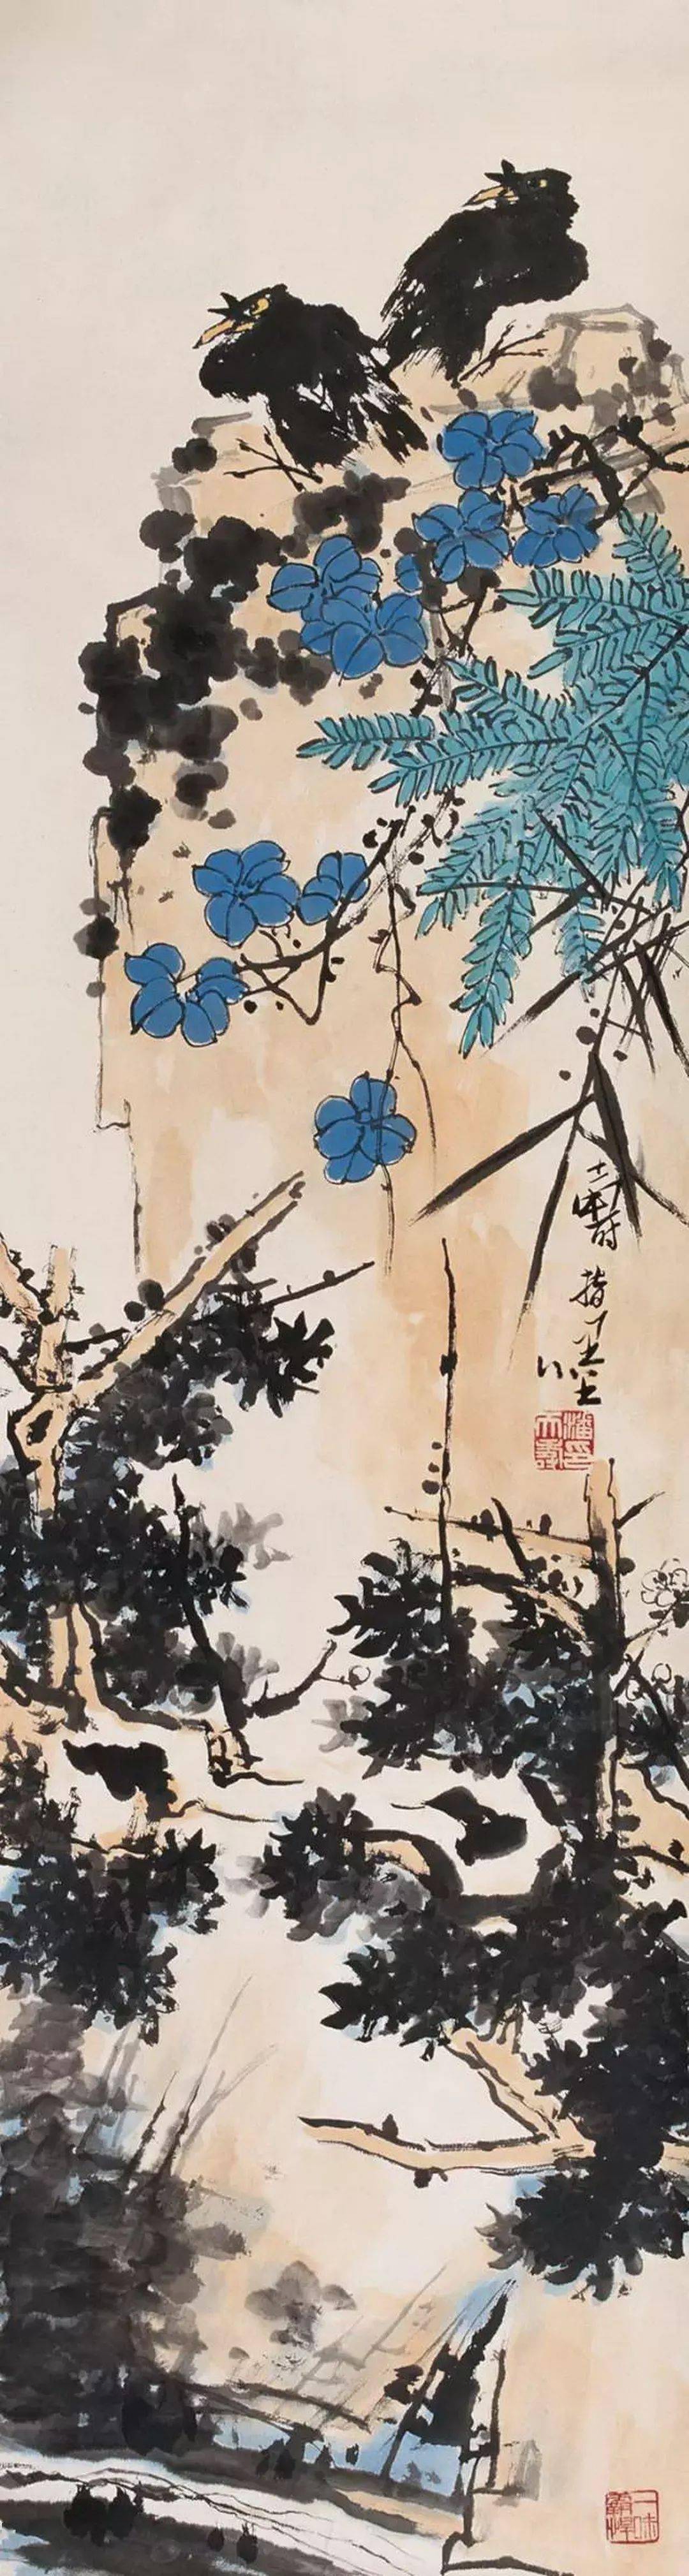 7cm 纸本水墨设色中国美术馆藏(碎片拼接)潘天寿《露气》1958年作